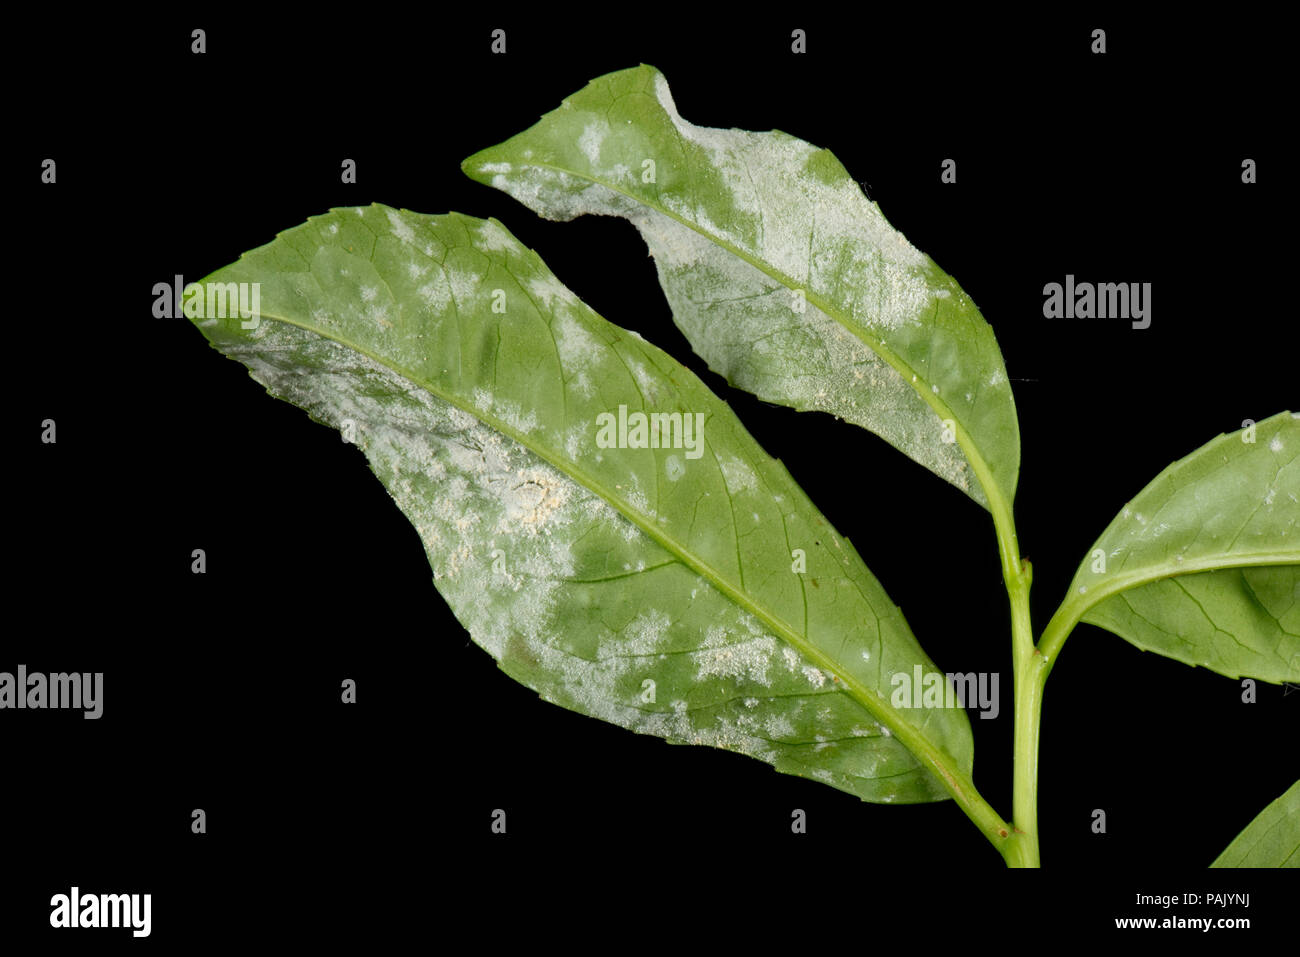 L'oïdium, Podosphaera pannosa ou tridactyla), sur la face inférieure des feuilles de laurier cerise dans un jardin d'une haie, Juillet Banque D'Images